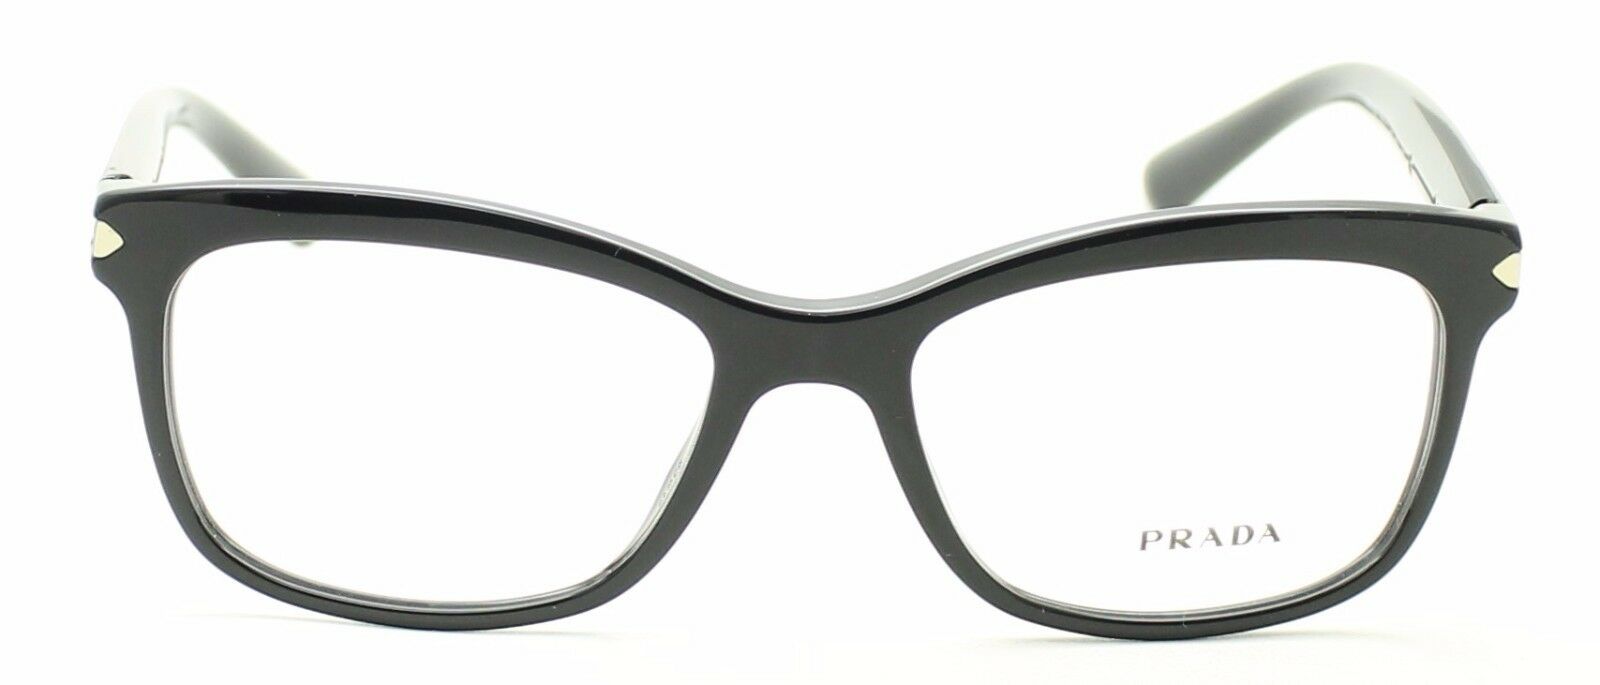 PRADA VPR10R 1AB-1O1 53mm Eyewear FRAMES RX Optical Eyeglasses Glasses New Italy